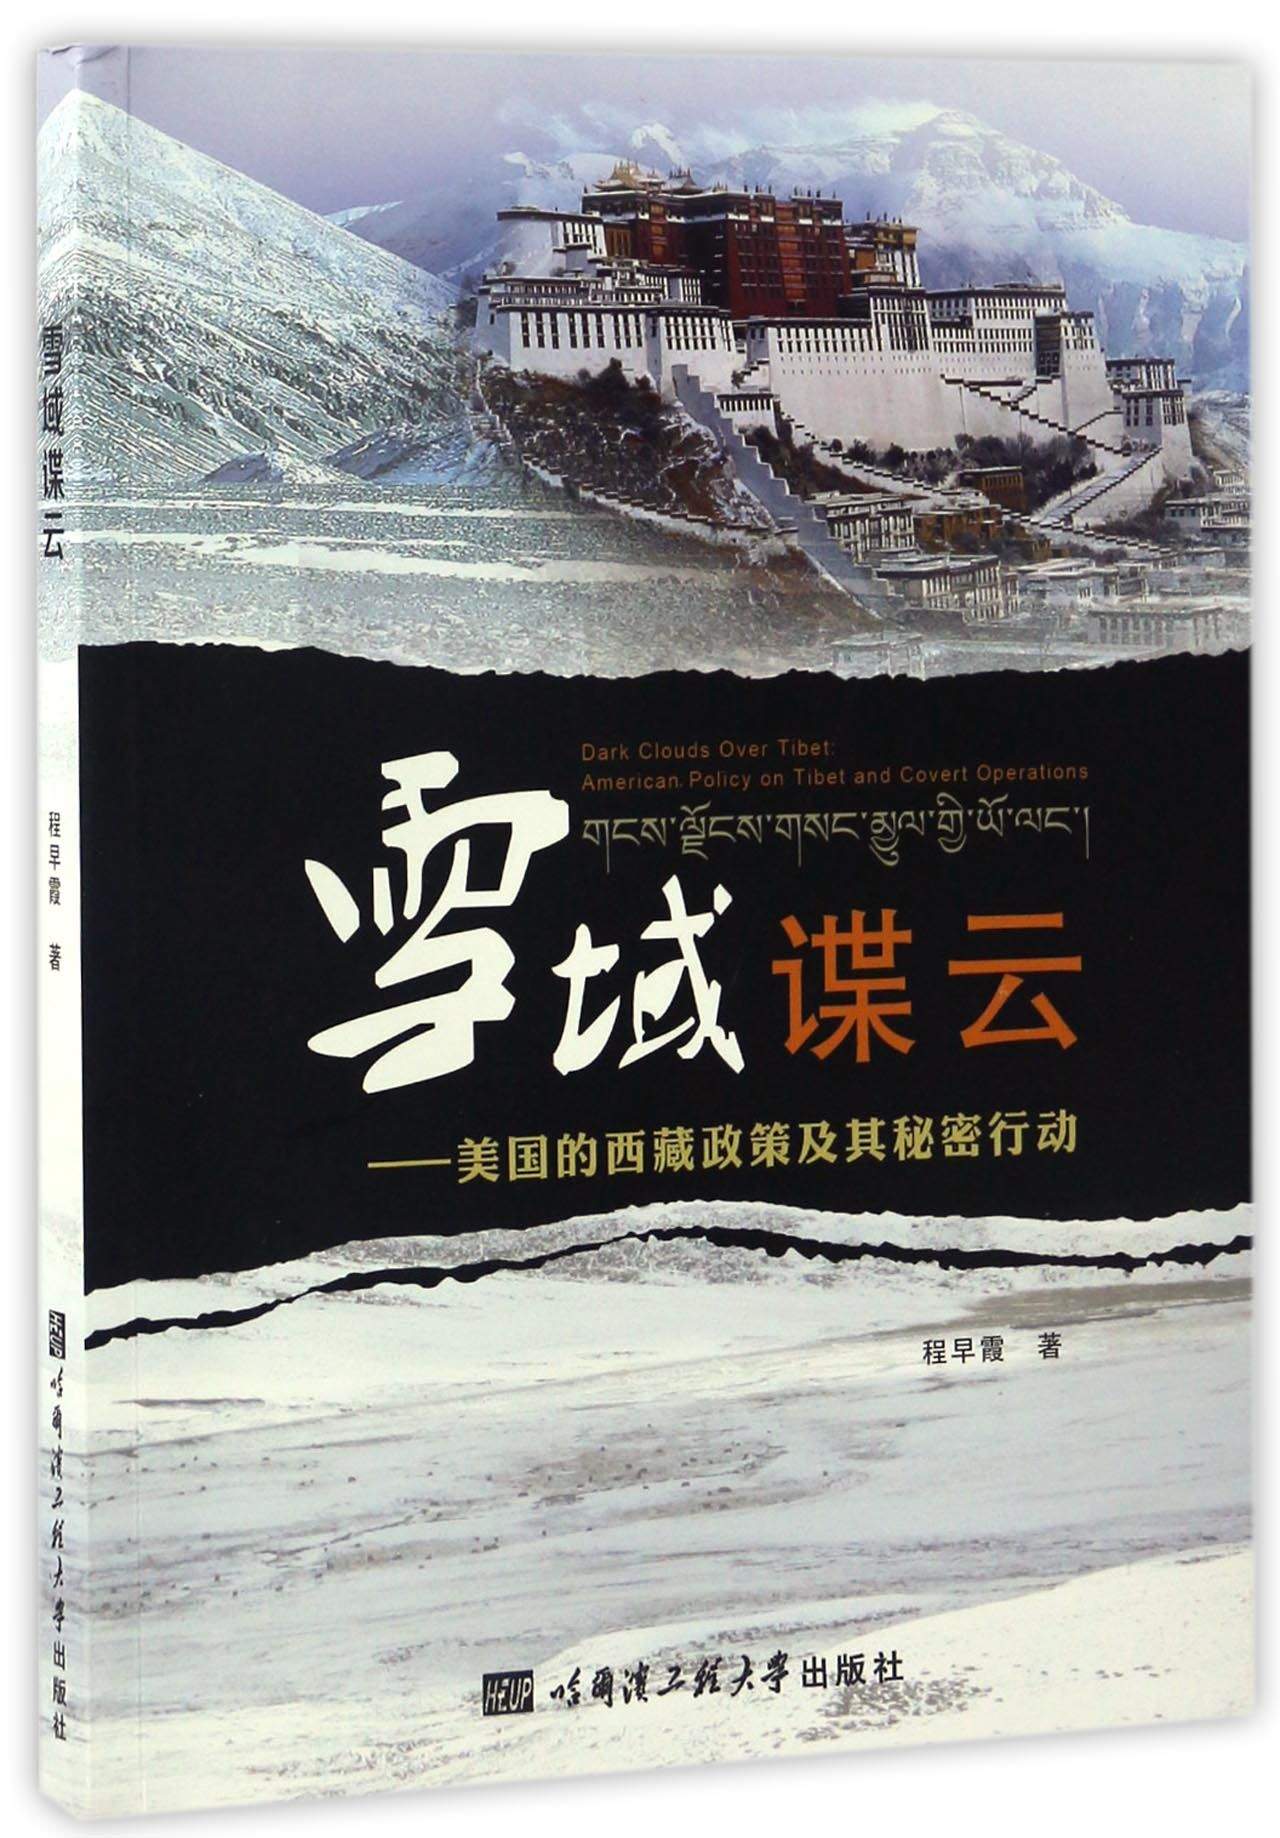 雪域谍云 美国的西藏政策及其秘密行动 pdf格式下载